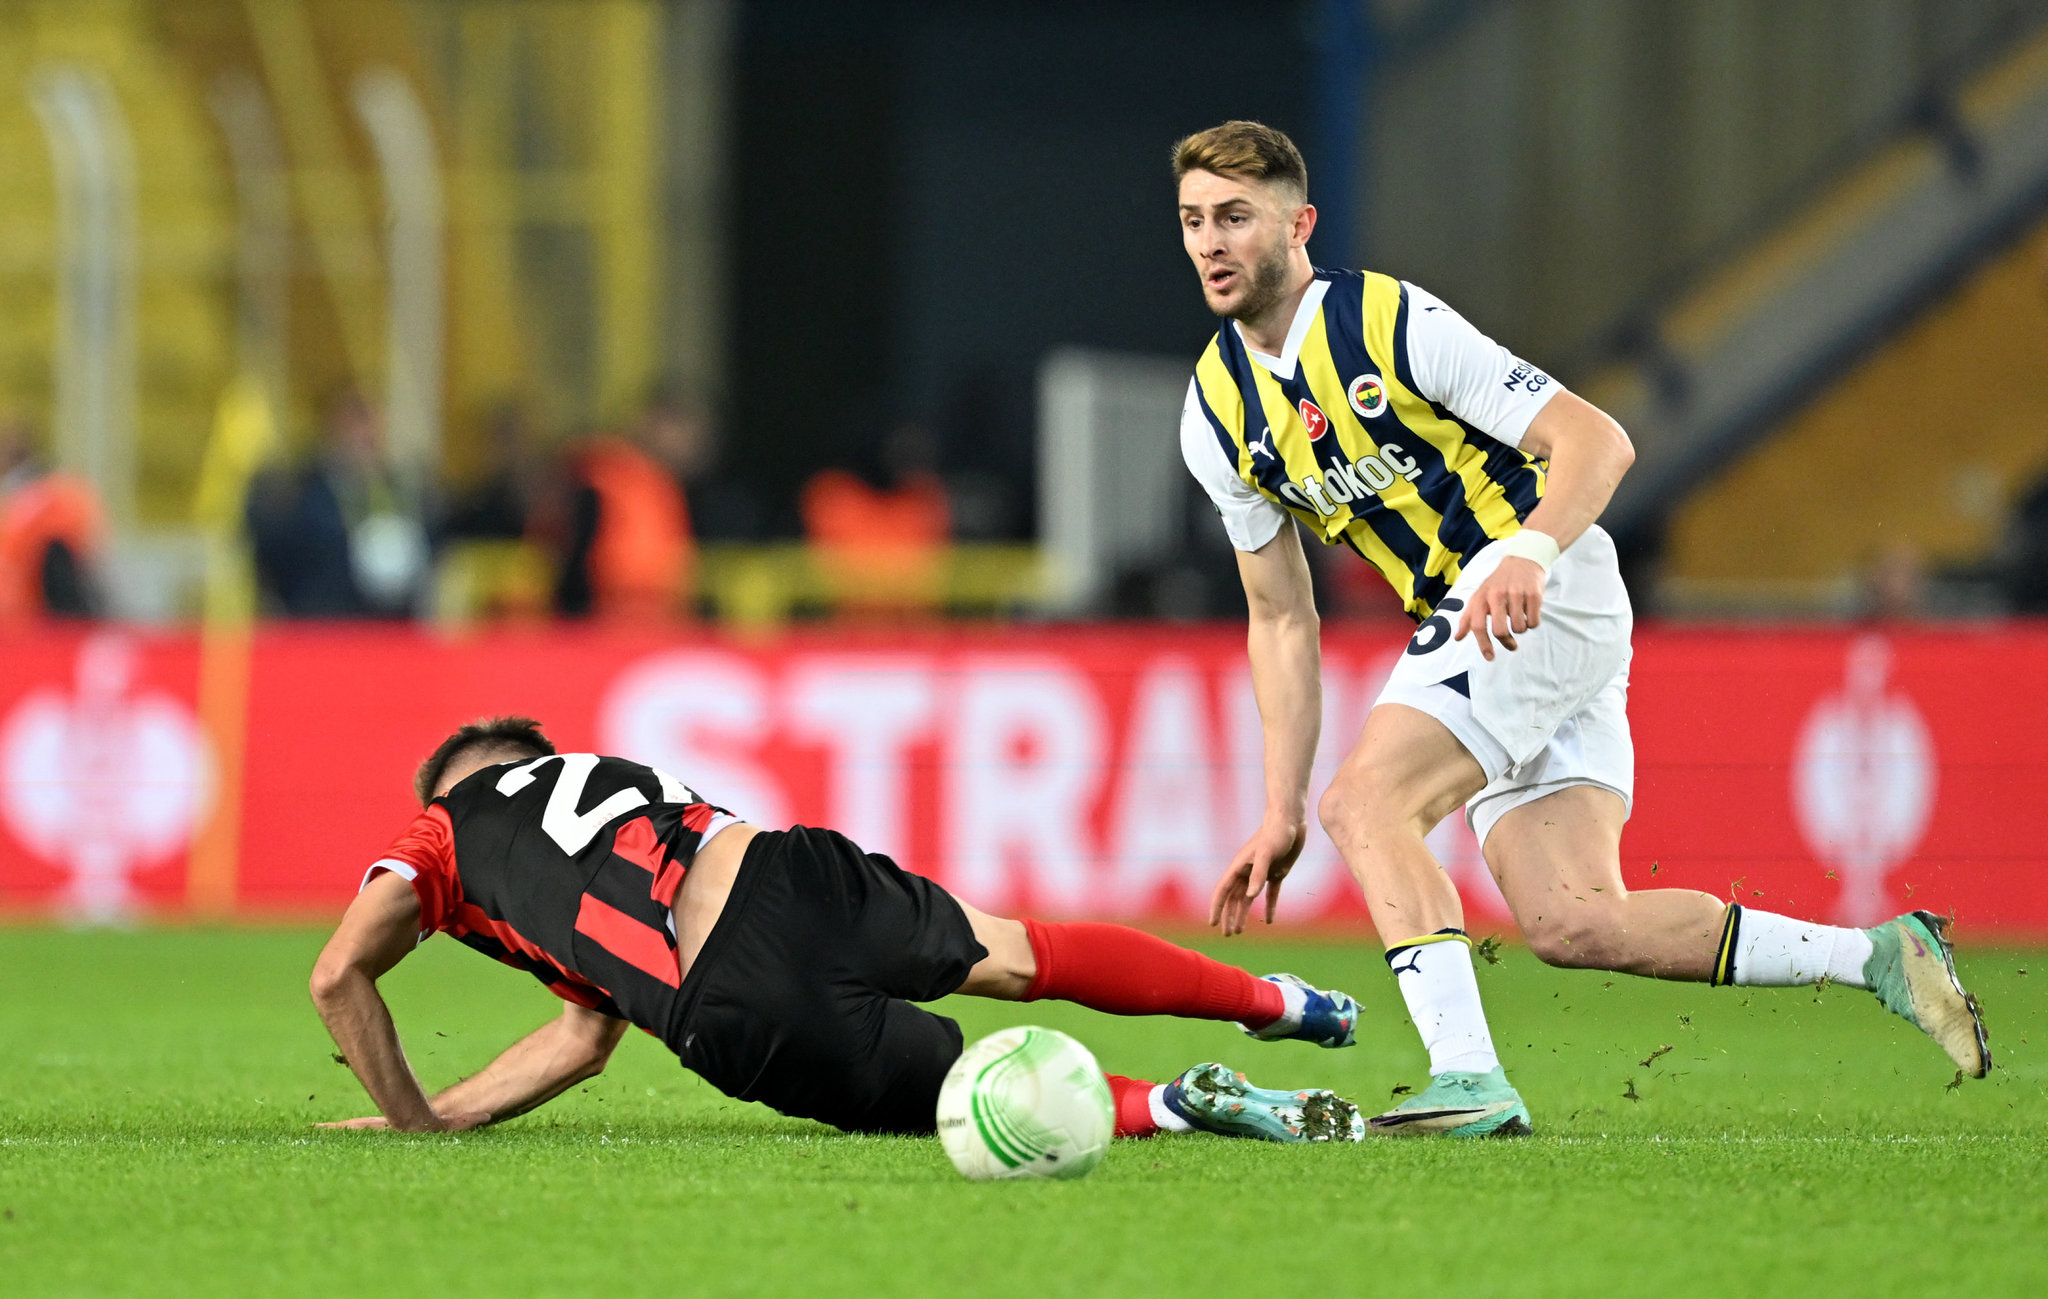 Kira sözleşmesini iptal etti! İşte Fenerbahçe’nin yeni transferi